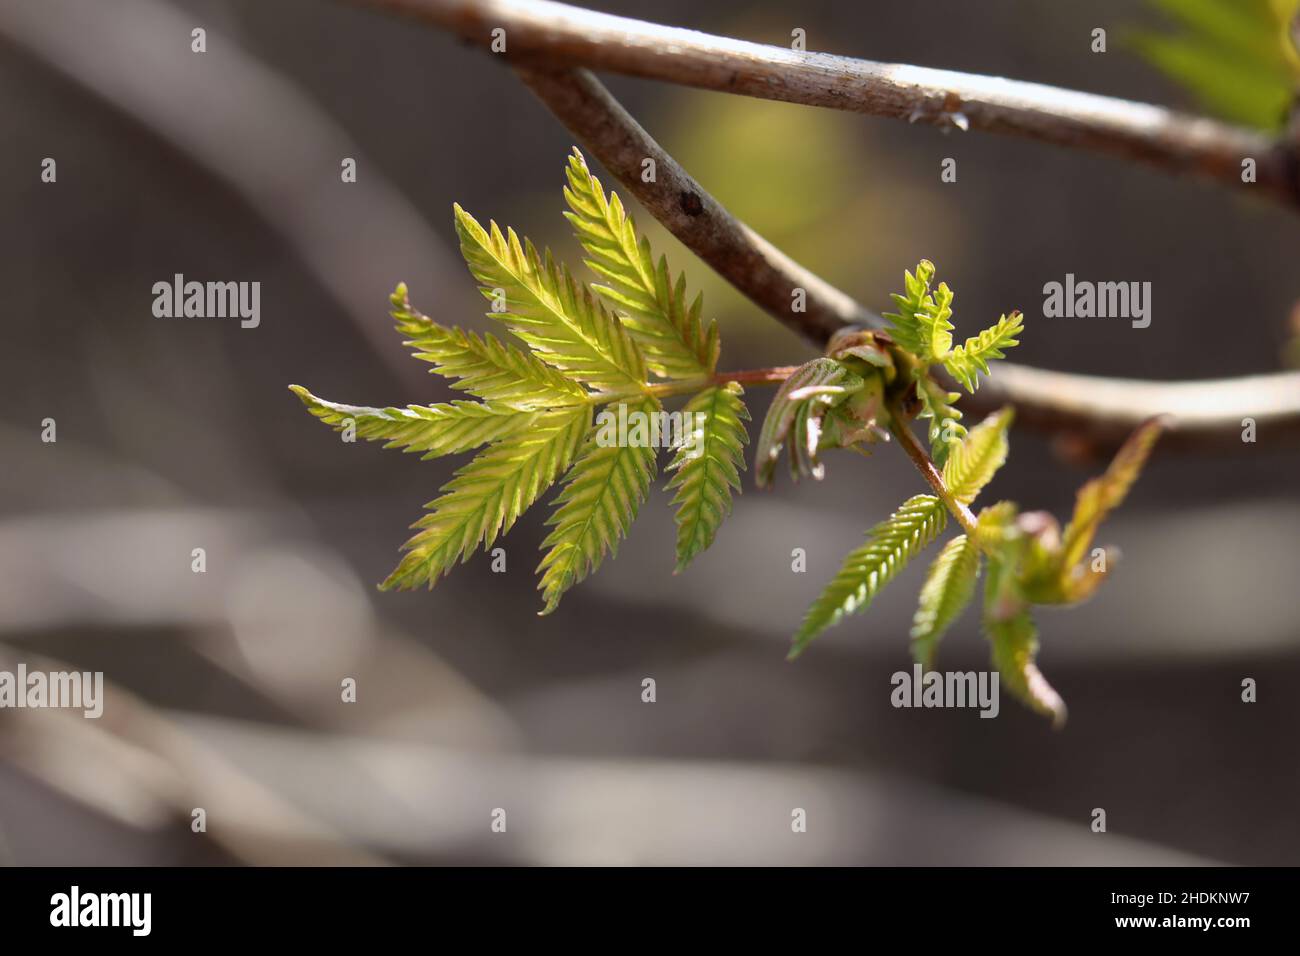 Primo piano delle gemme, fusto e piccole foglie verdi di sorbus aucuparia (rowan, pihlaja). Foto macro giornata di primavera soleggiato scattata nella Finlandia meridionale. Foto Stock